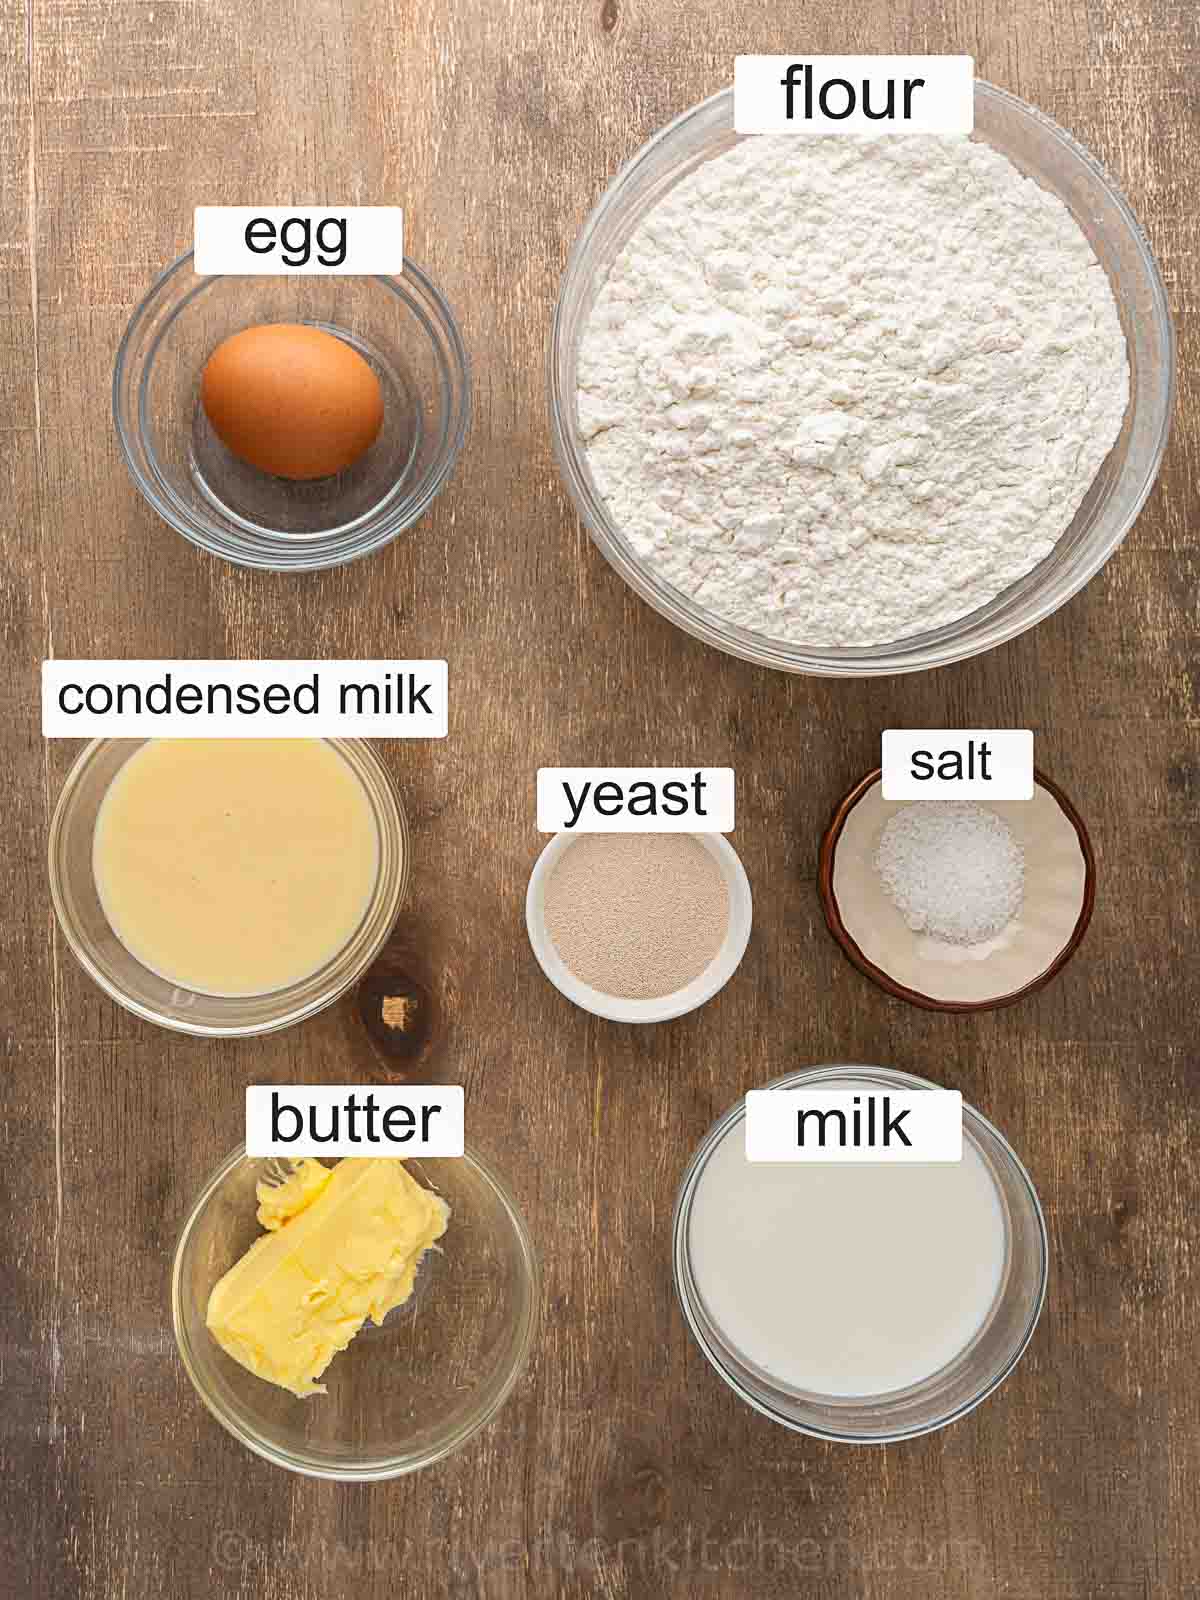 flour, condensed milk, butter, fresh milk, yeast, salt and egg.